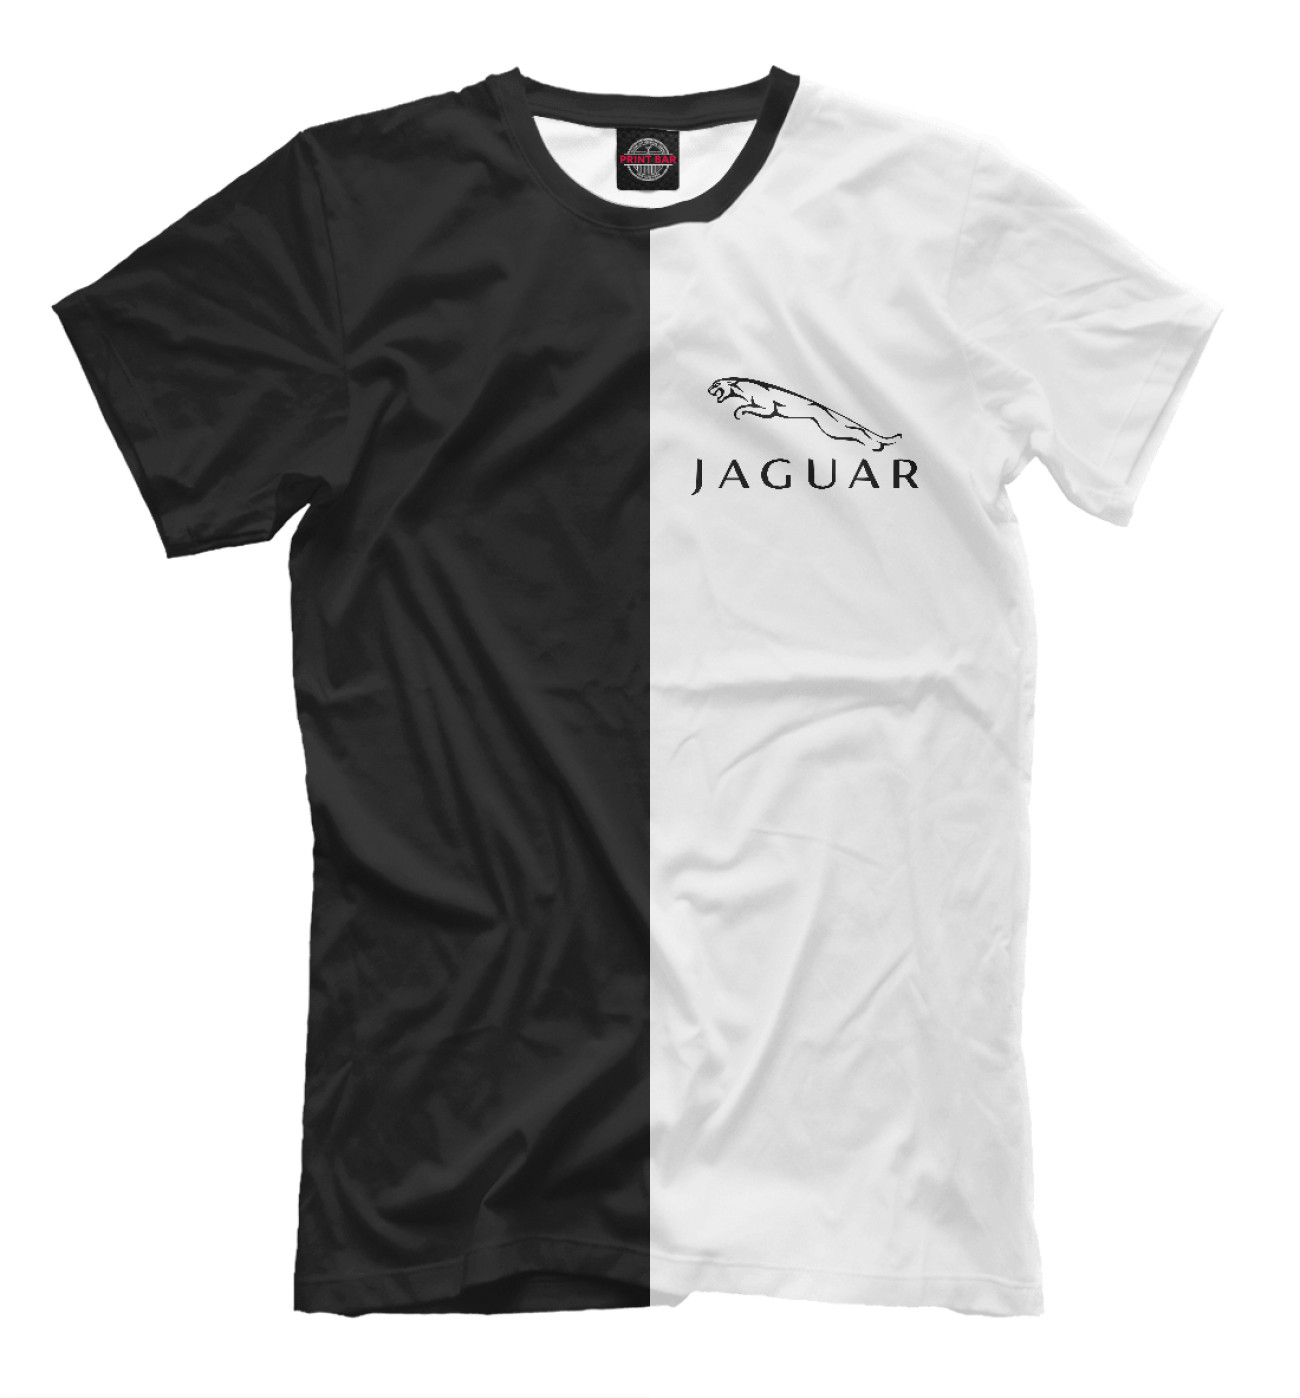 Мужская Футболка Jaguar, артикул: JAG-366720-fut-2